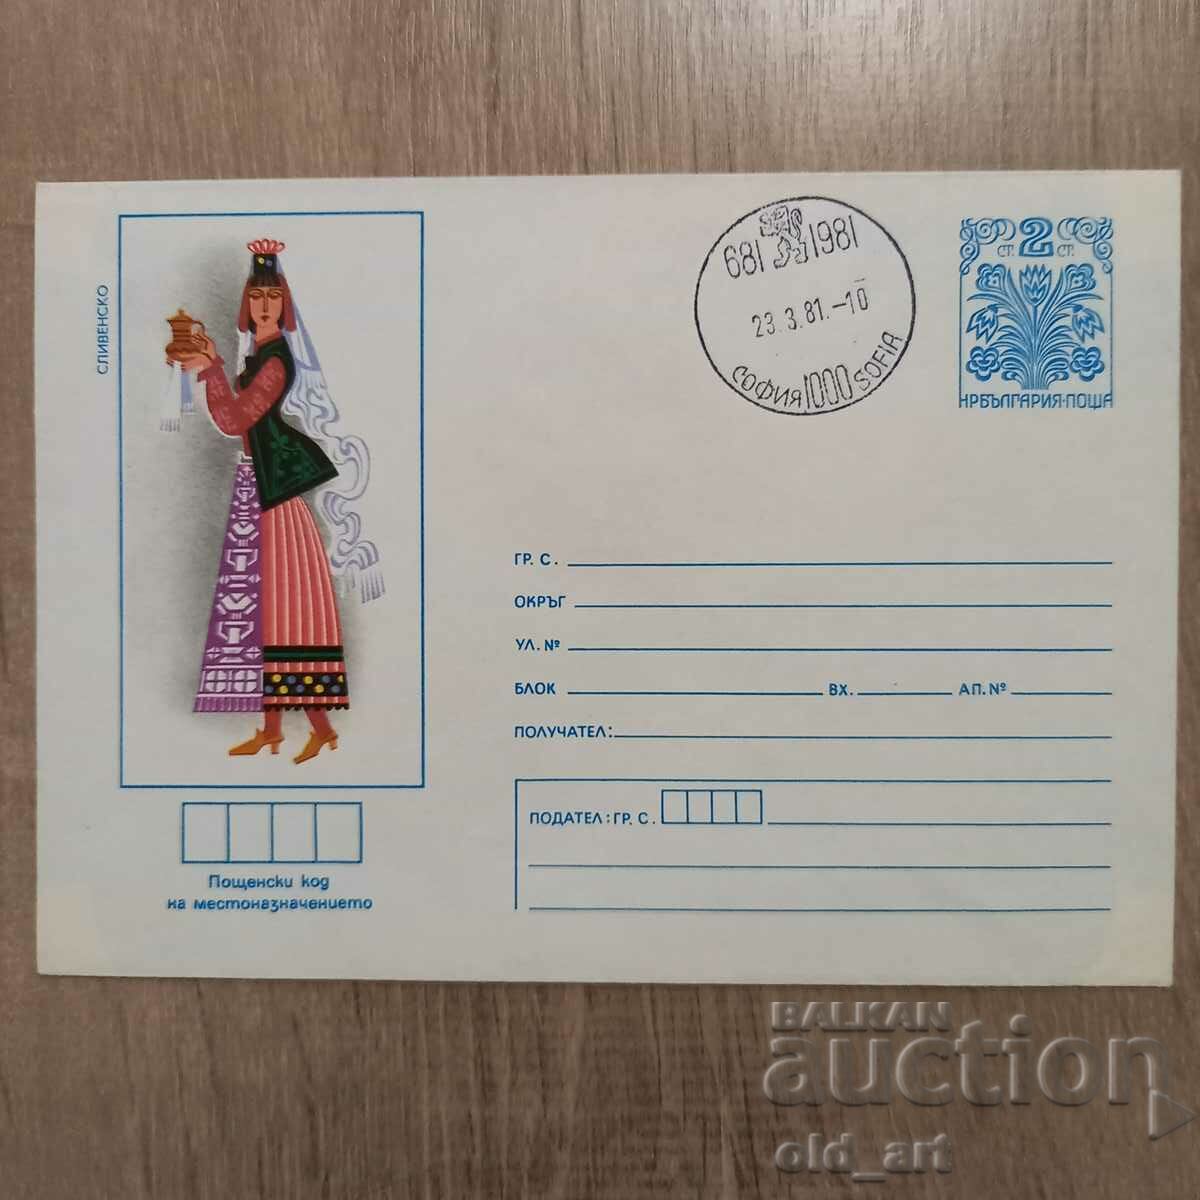 Ταχυδρομικός φάκελος - Λαϊκές φορεσιές - Sliven